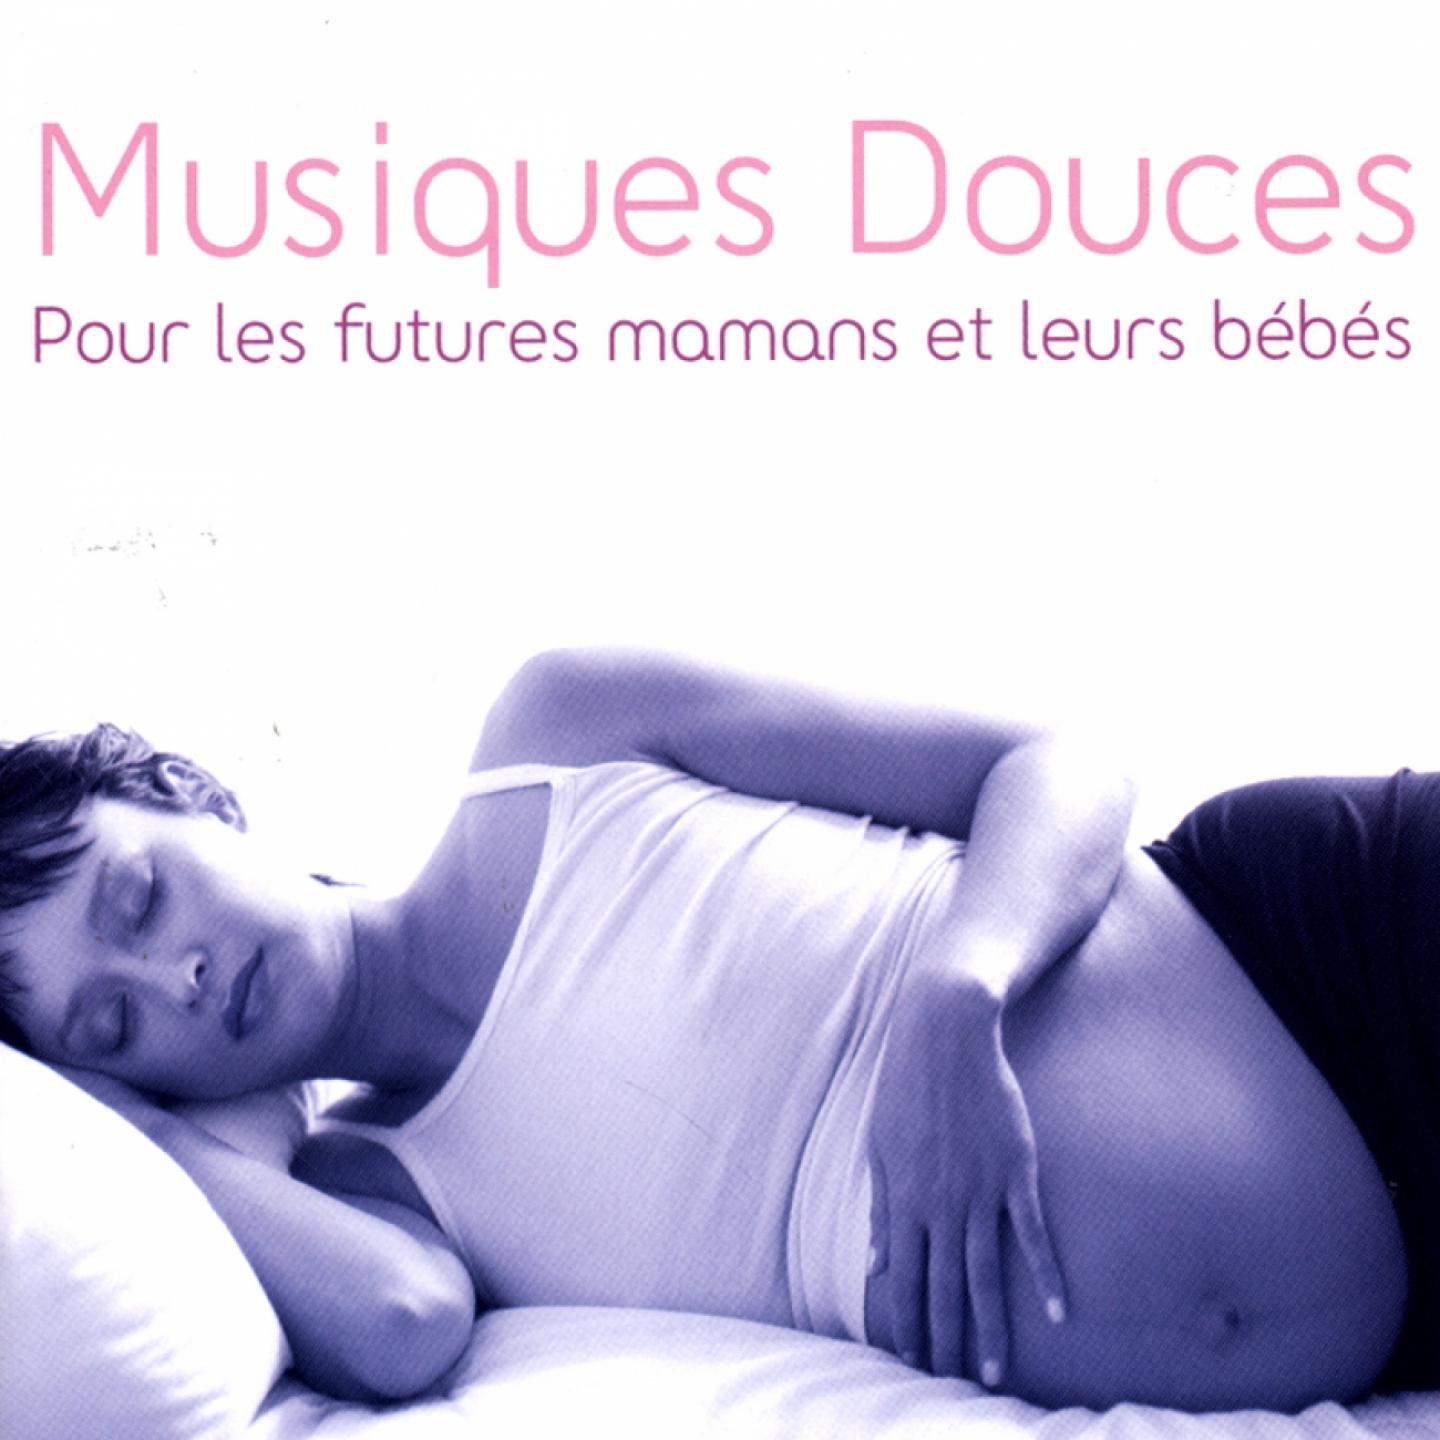 Musiques douces pour les futures mamans et leurs be be s